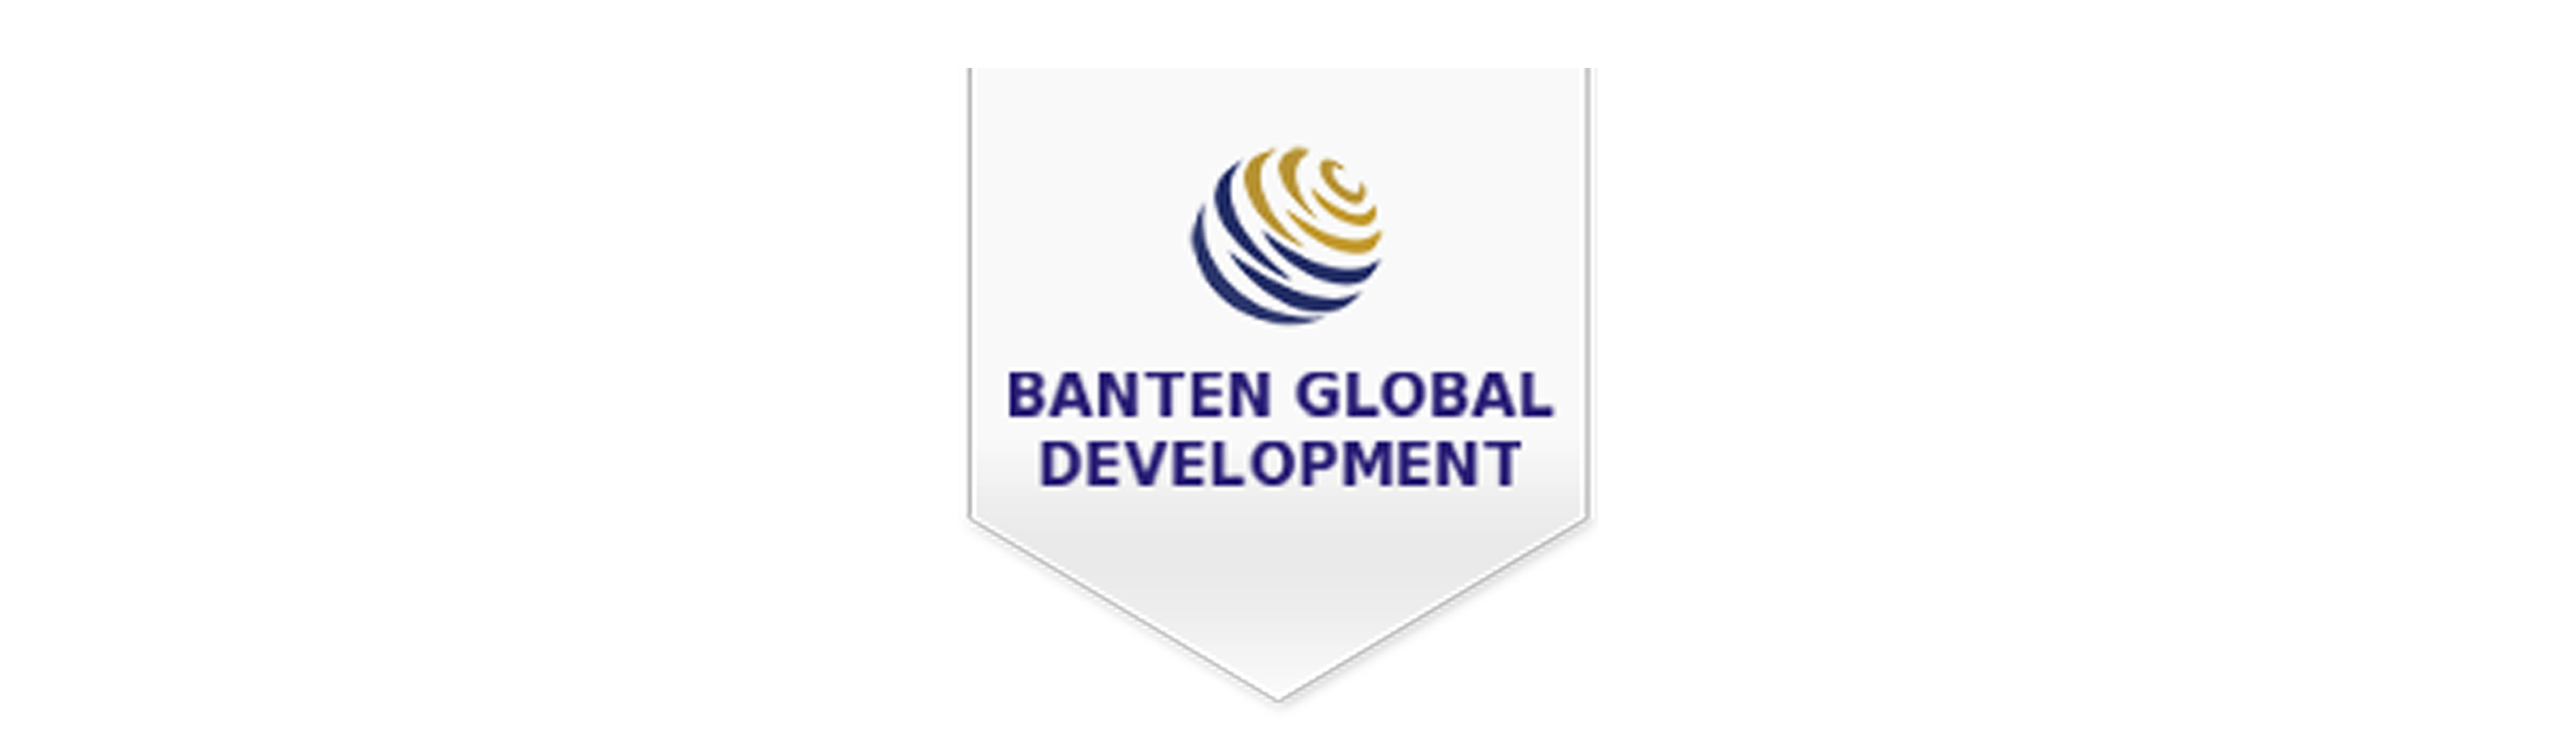 Banten Global Development